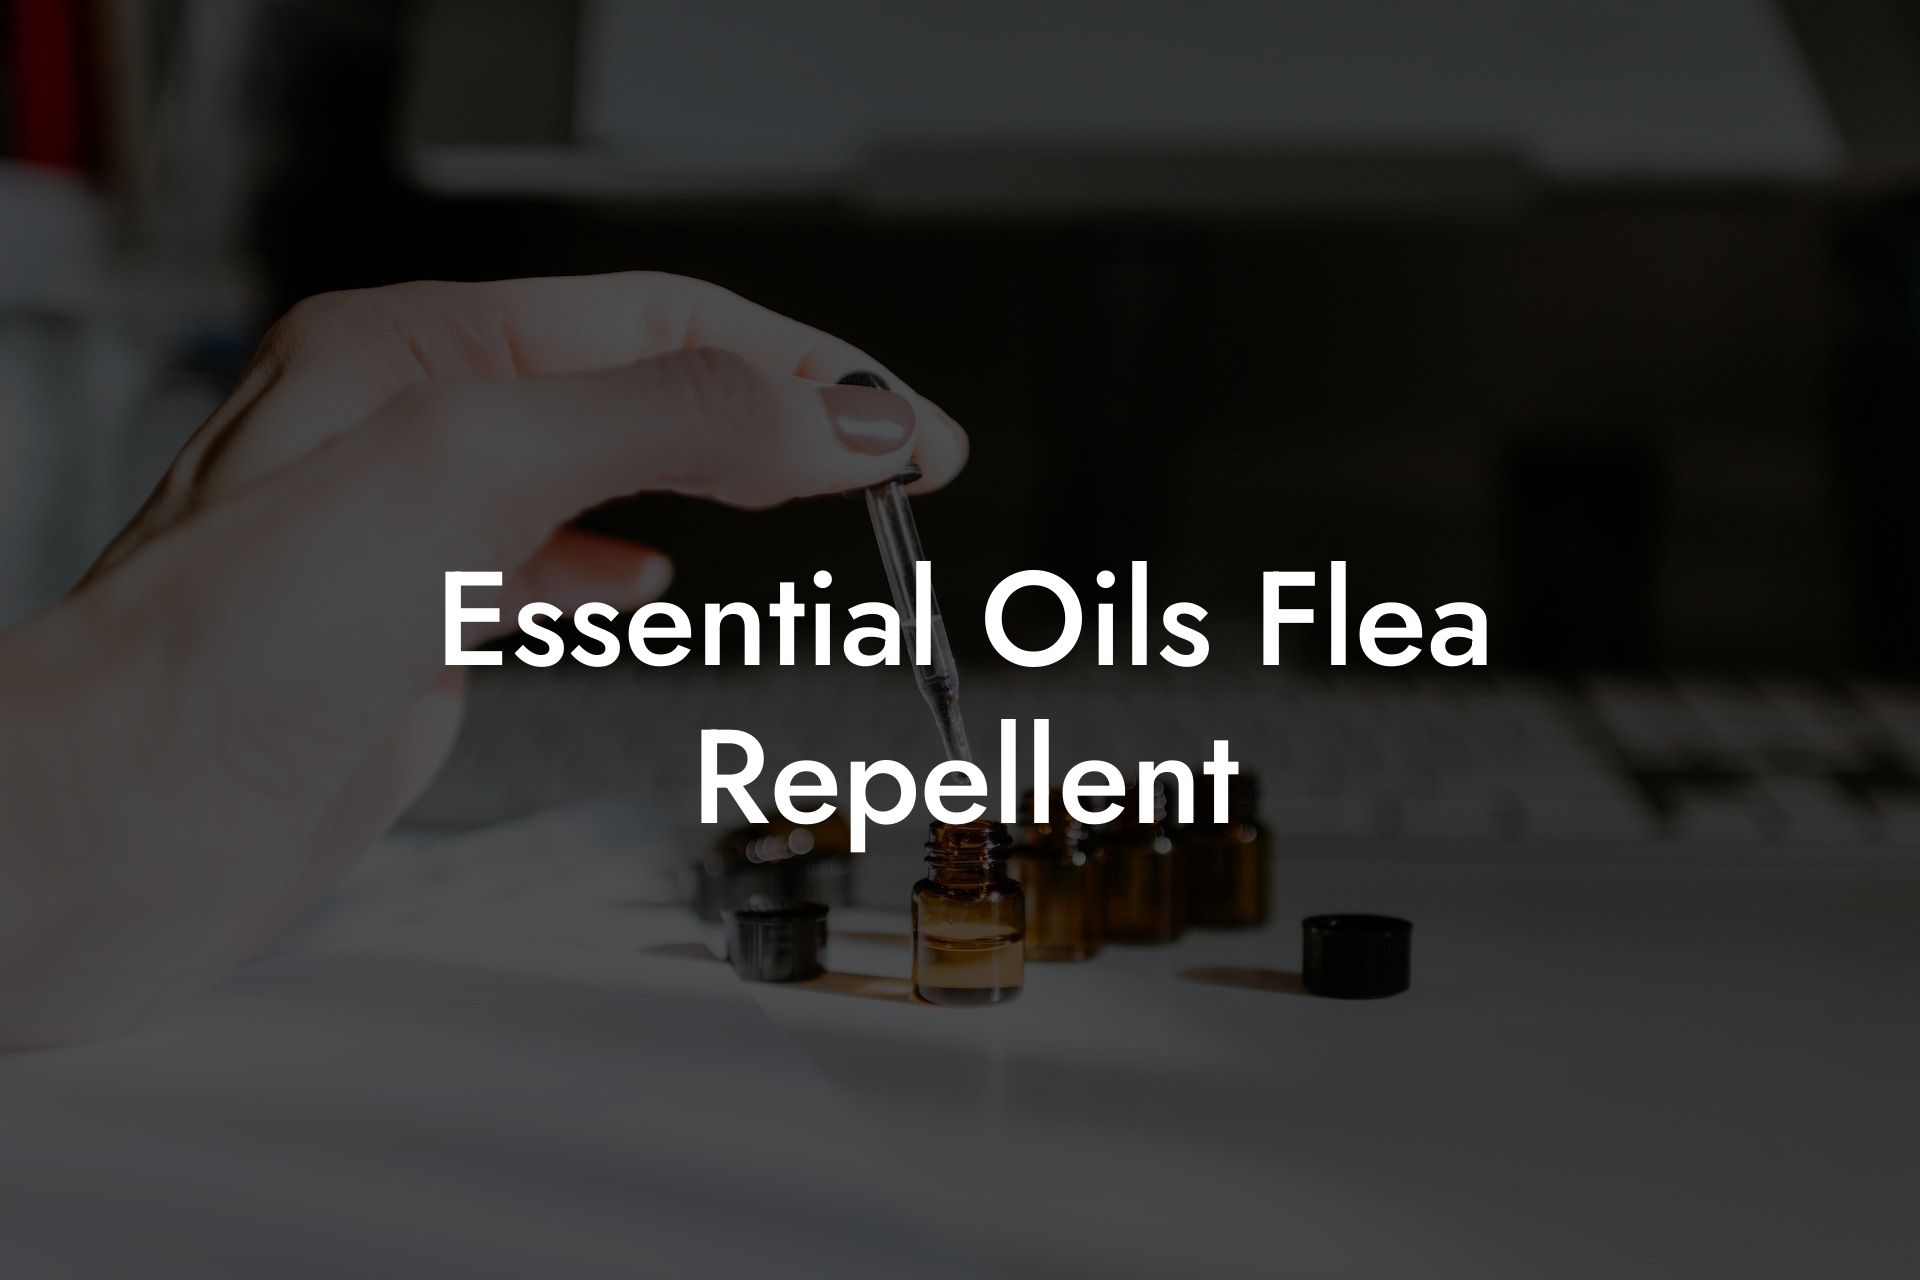 Essential Oils Flea Repellent